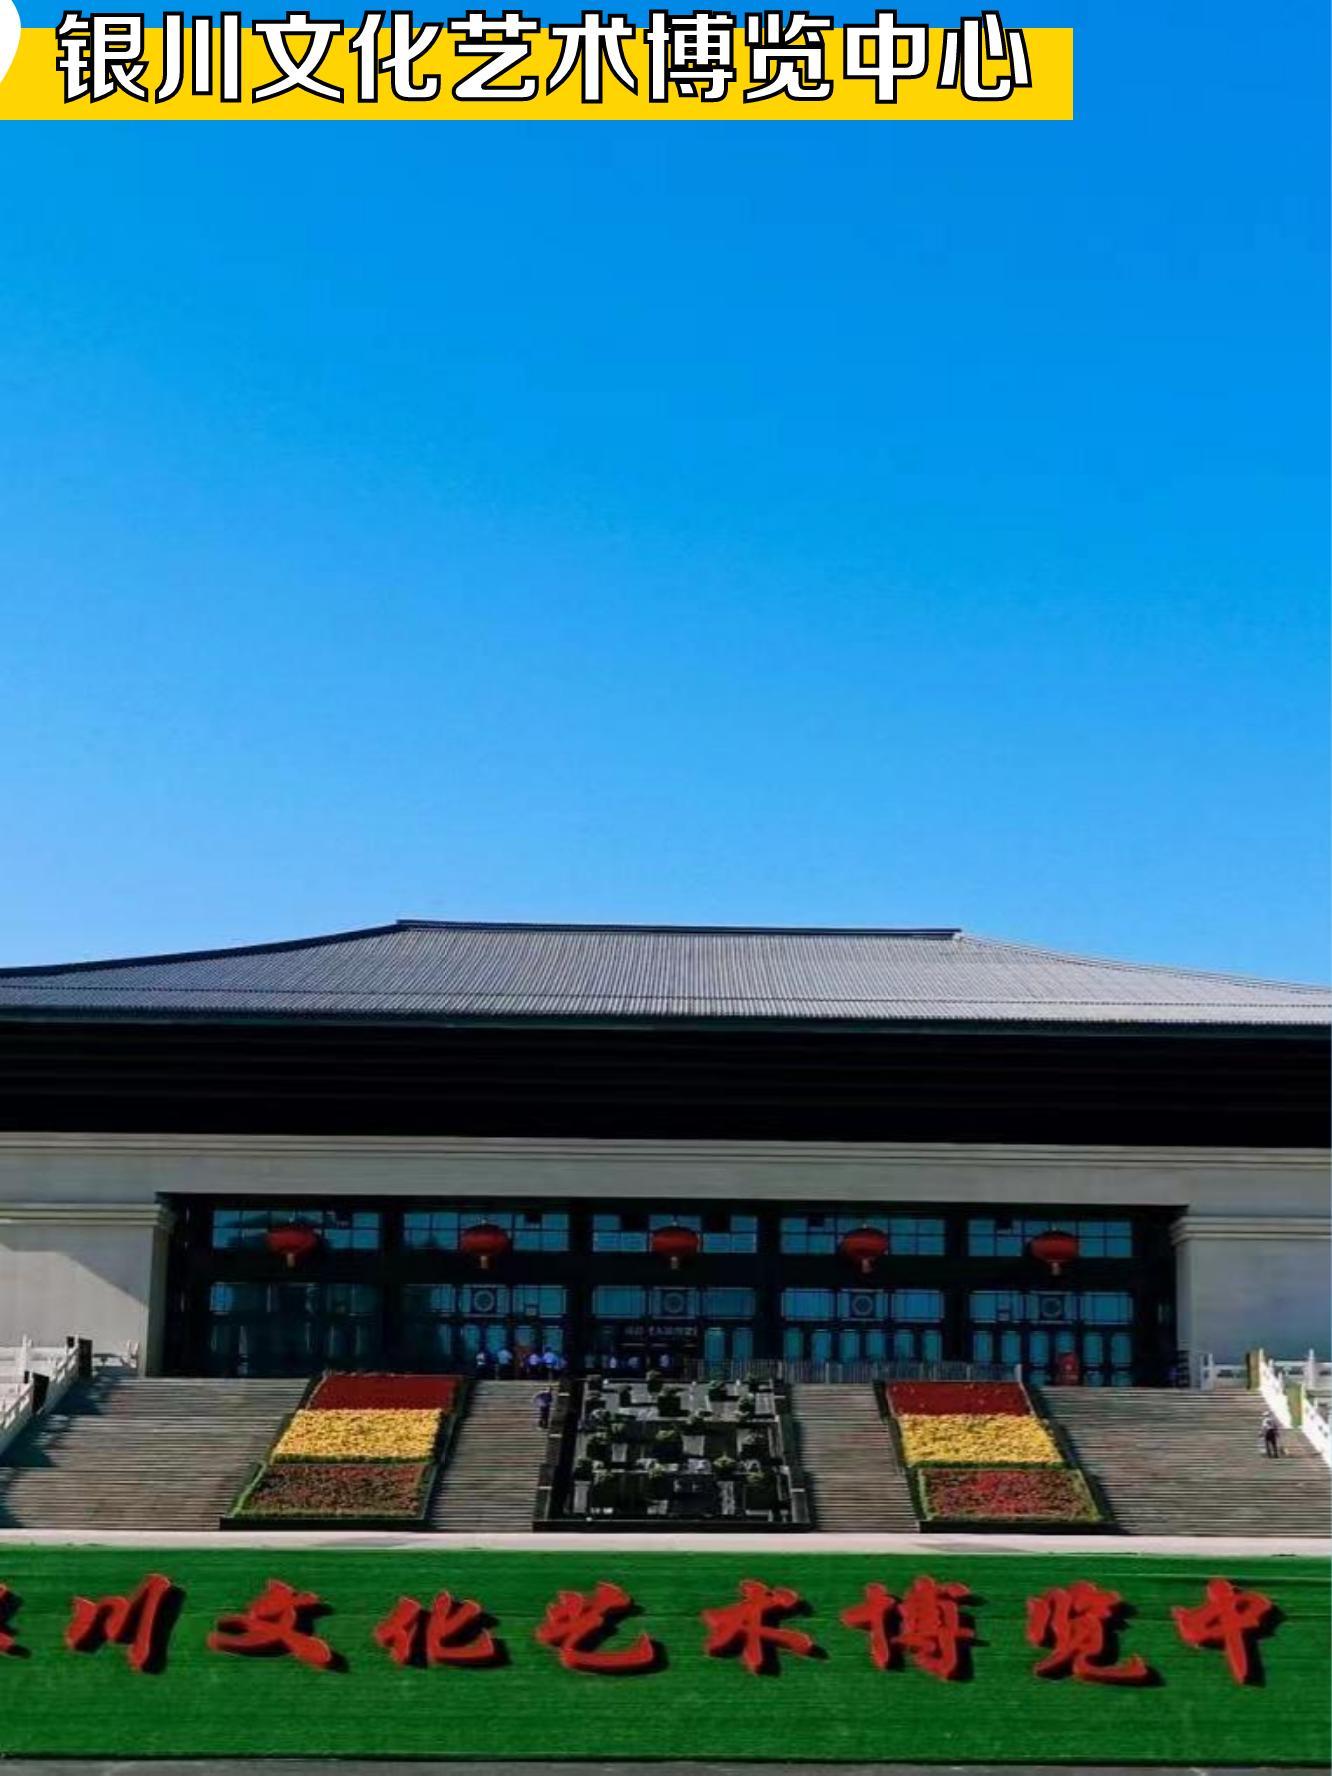 上午去: 银川文化艺术博览中心 